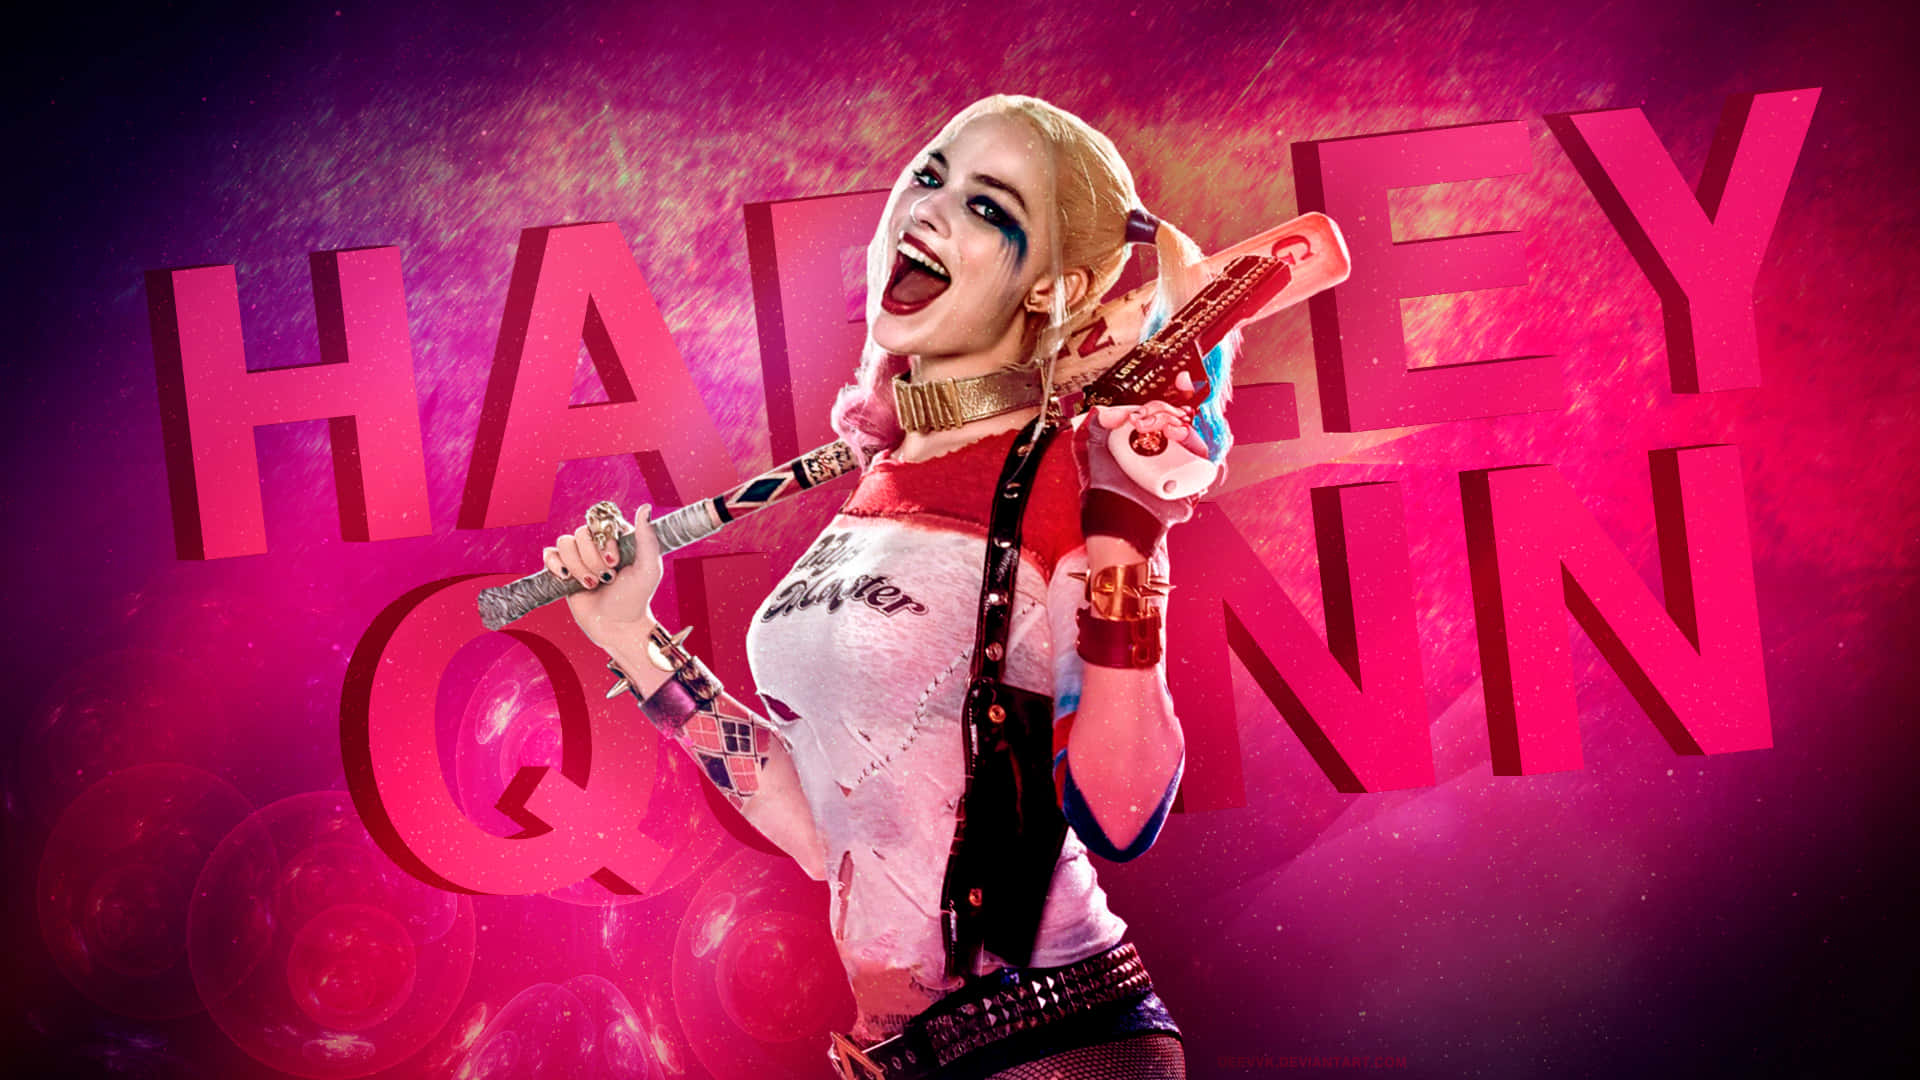 Margotrobbie Verkörpert Die Manische Energie Von Harley Quinn Wallpaper